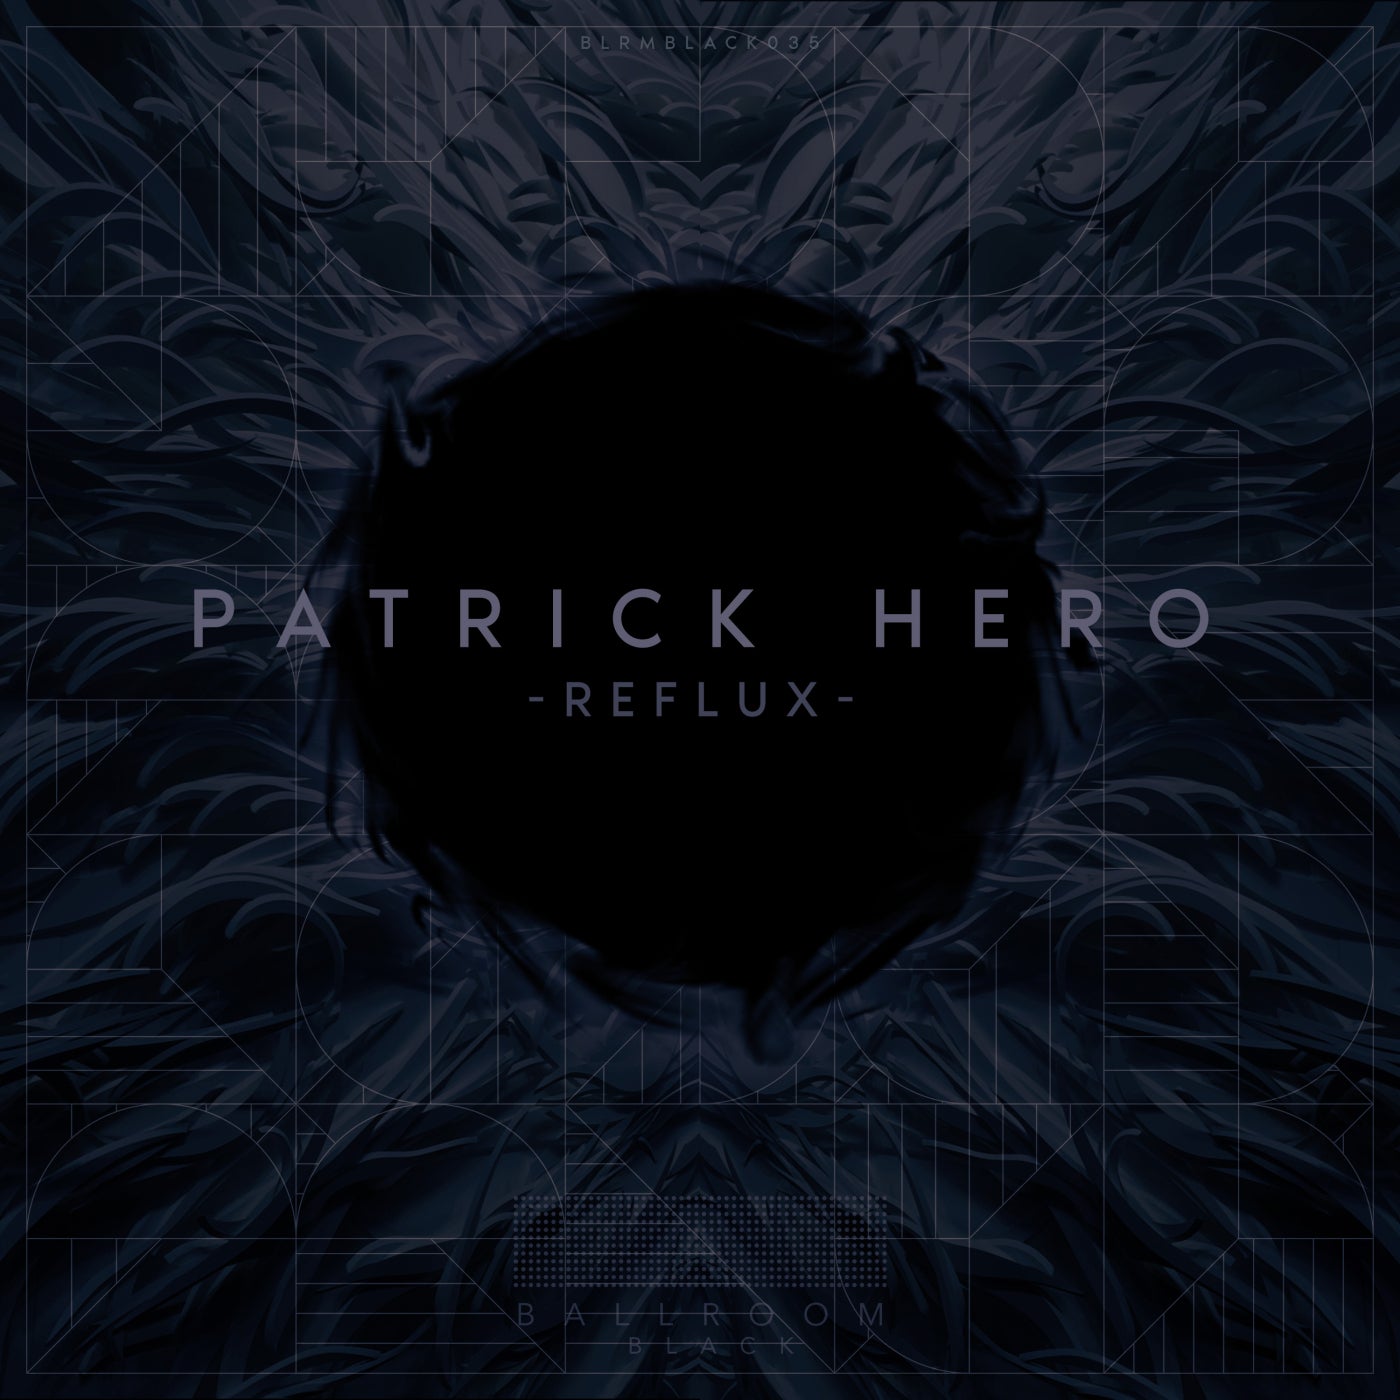 Patrick Hero – Reflux [BLRMBLACK035]